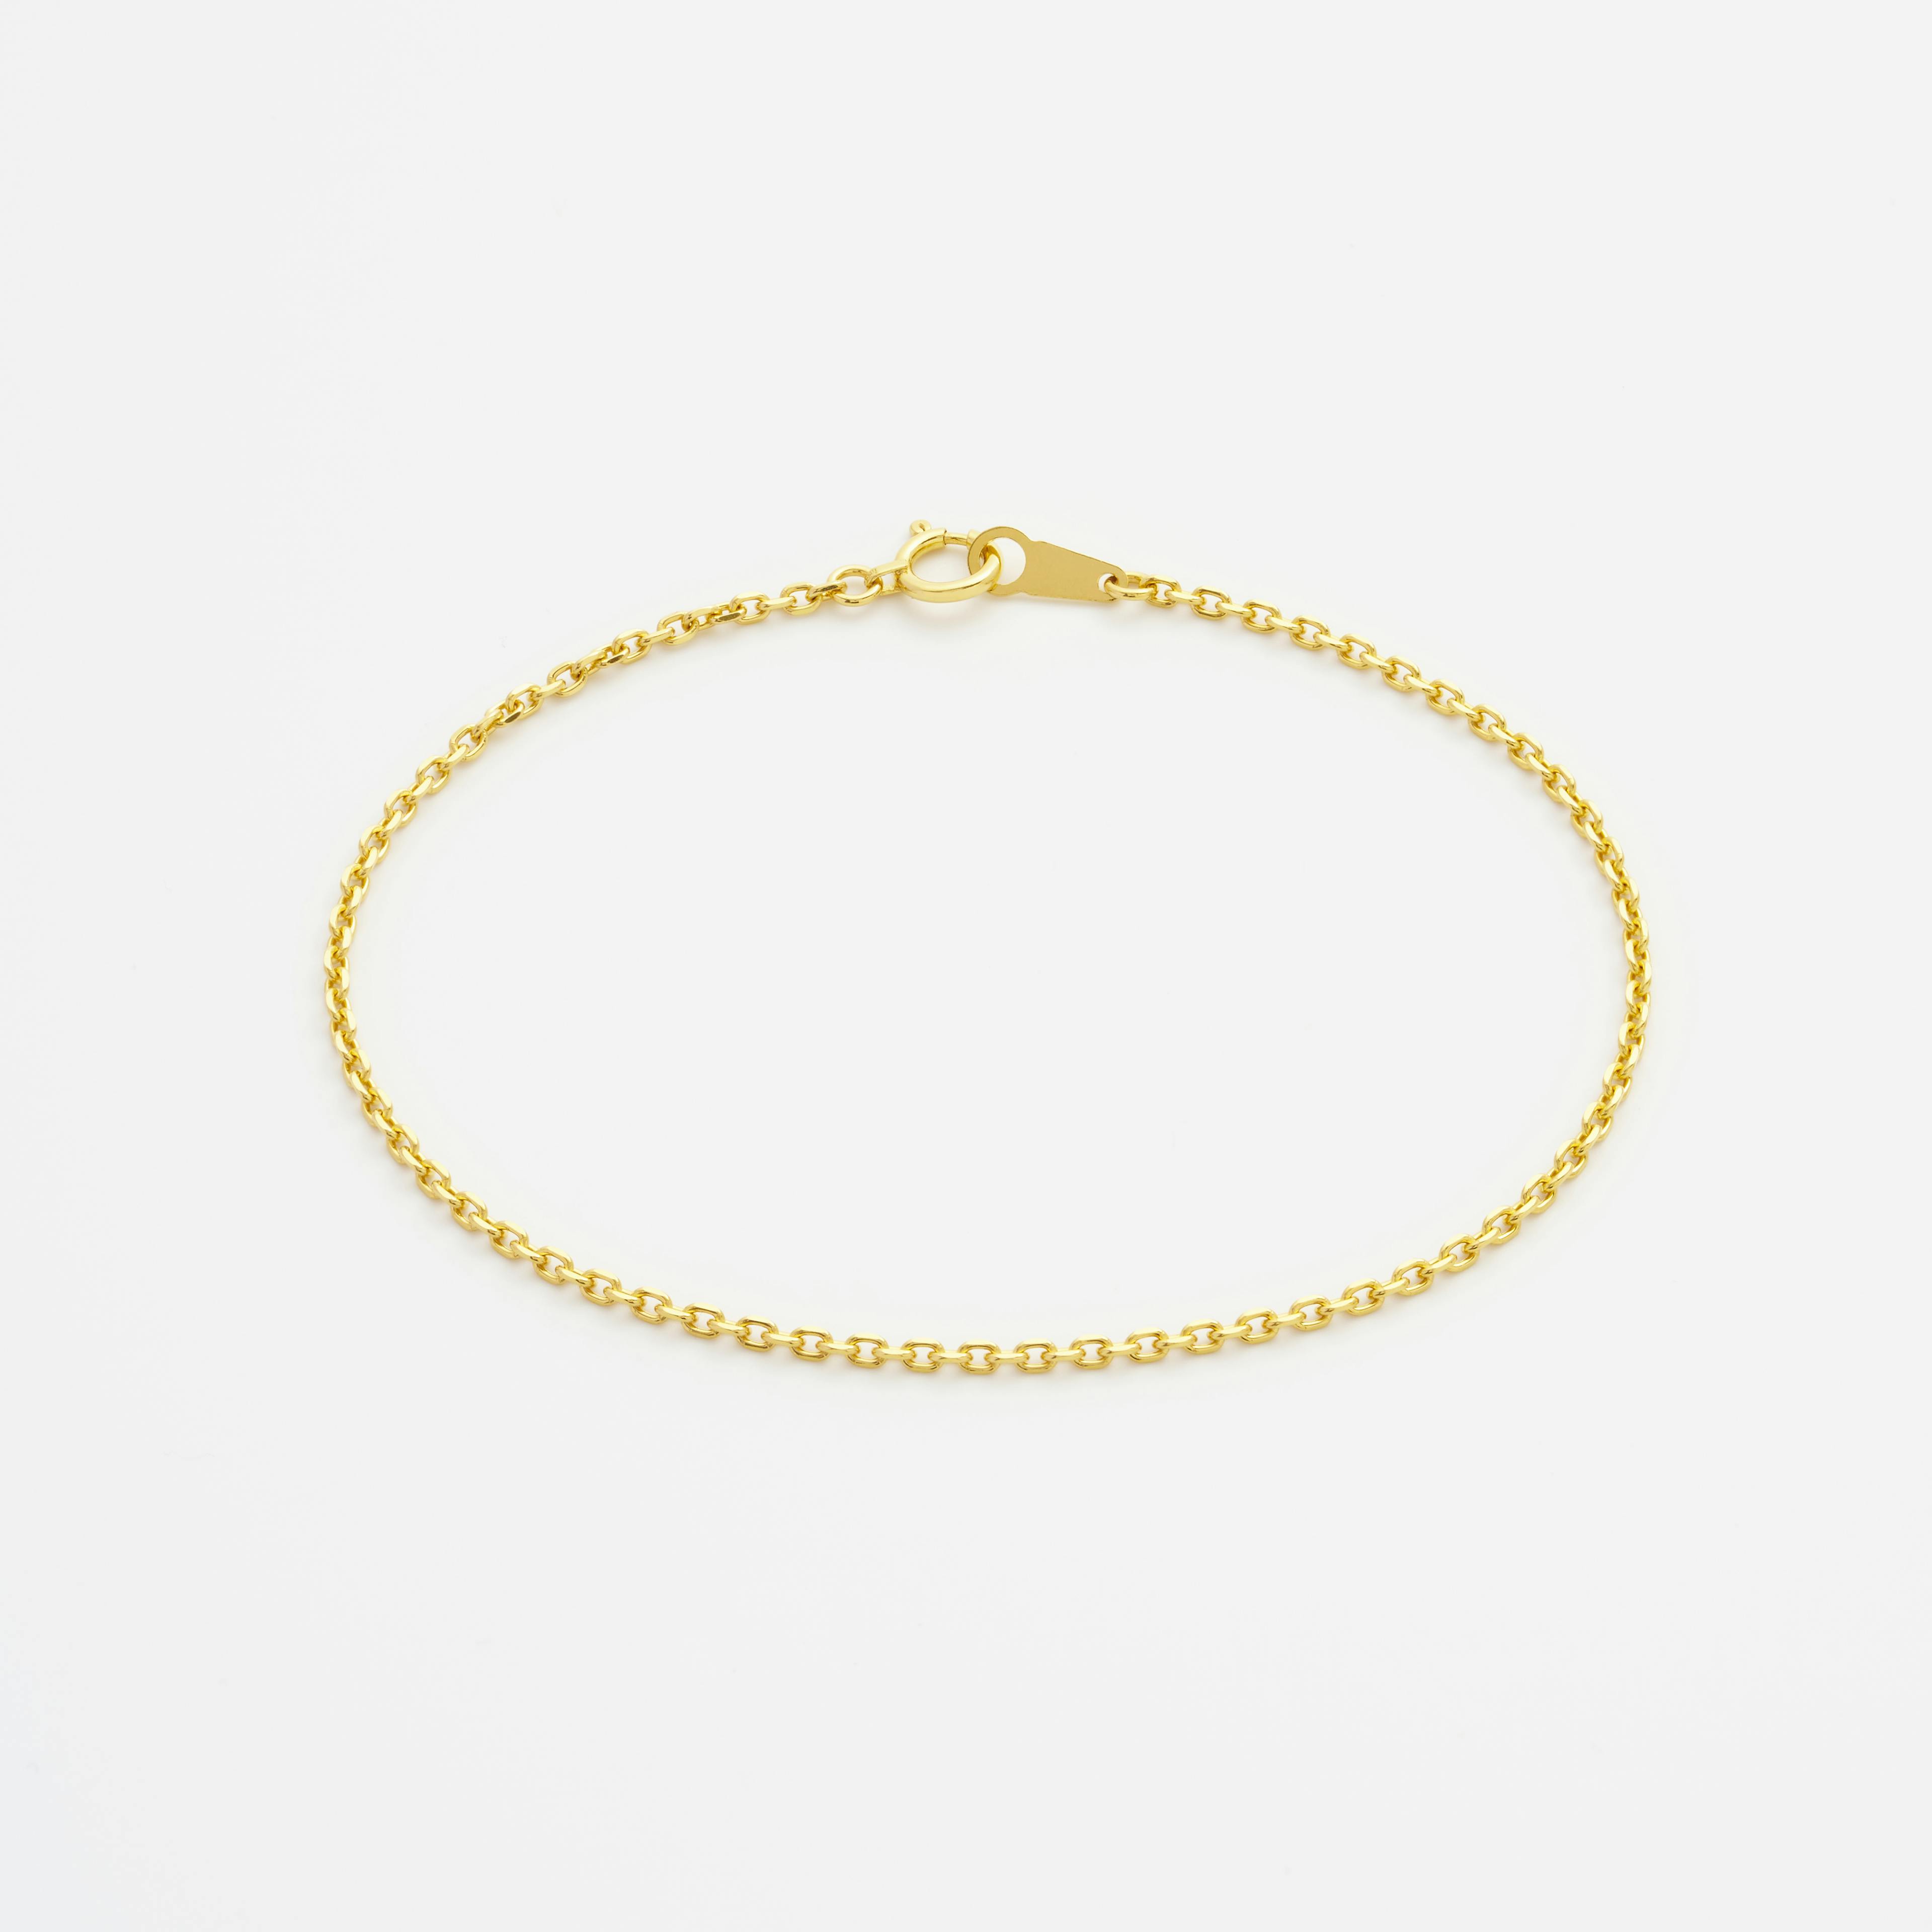 Shop Gold Bracelet Chains Wide Diamond Cut Cable Chain Bracelet